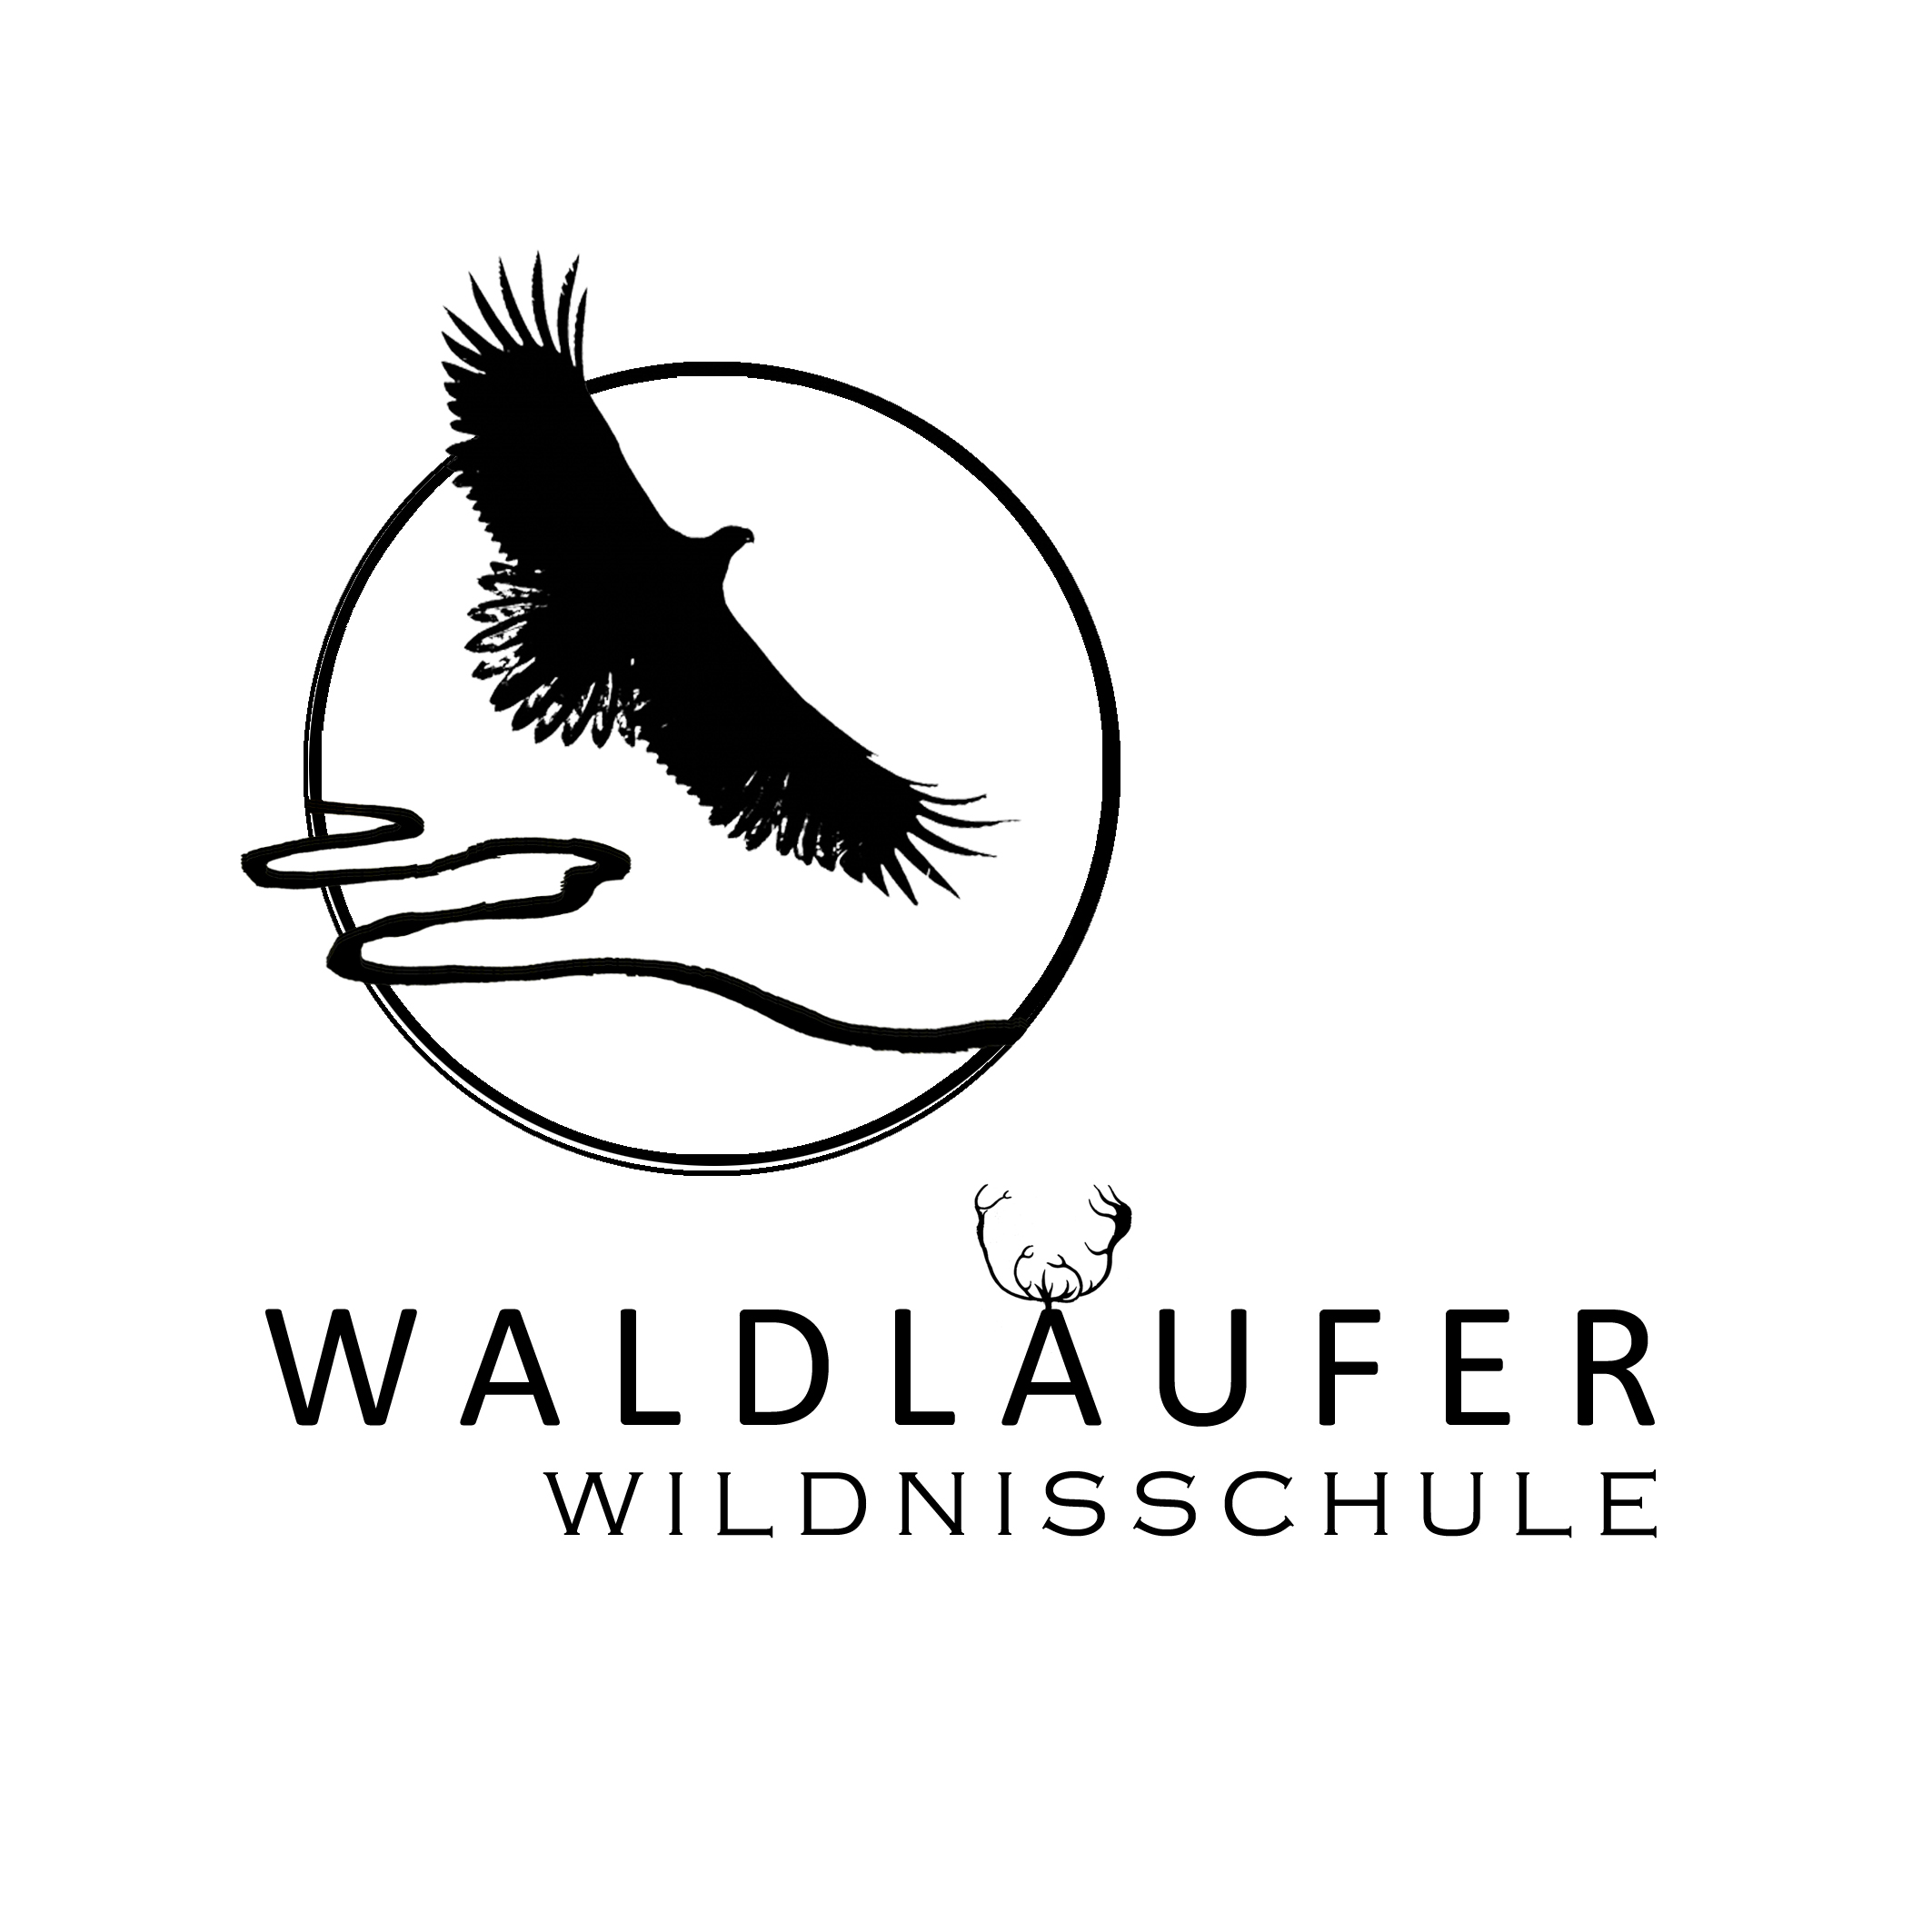 Logo of the wilderness school Waldläufer Wildnisschule